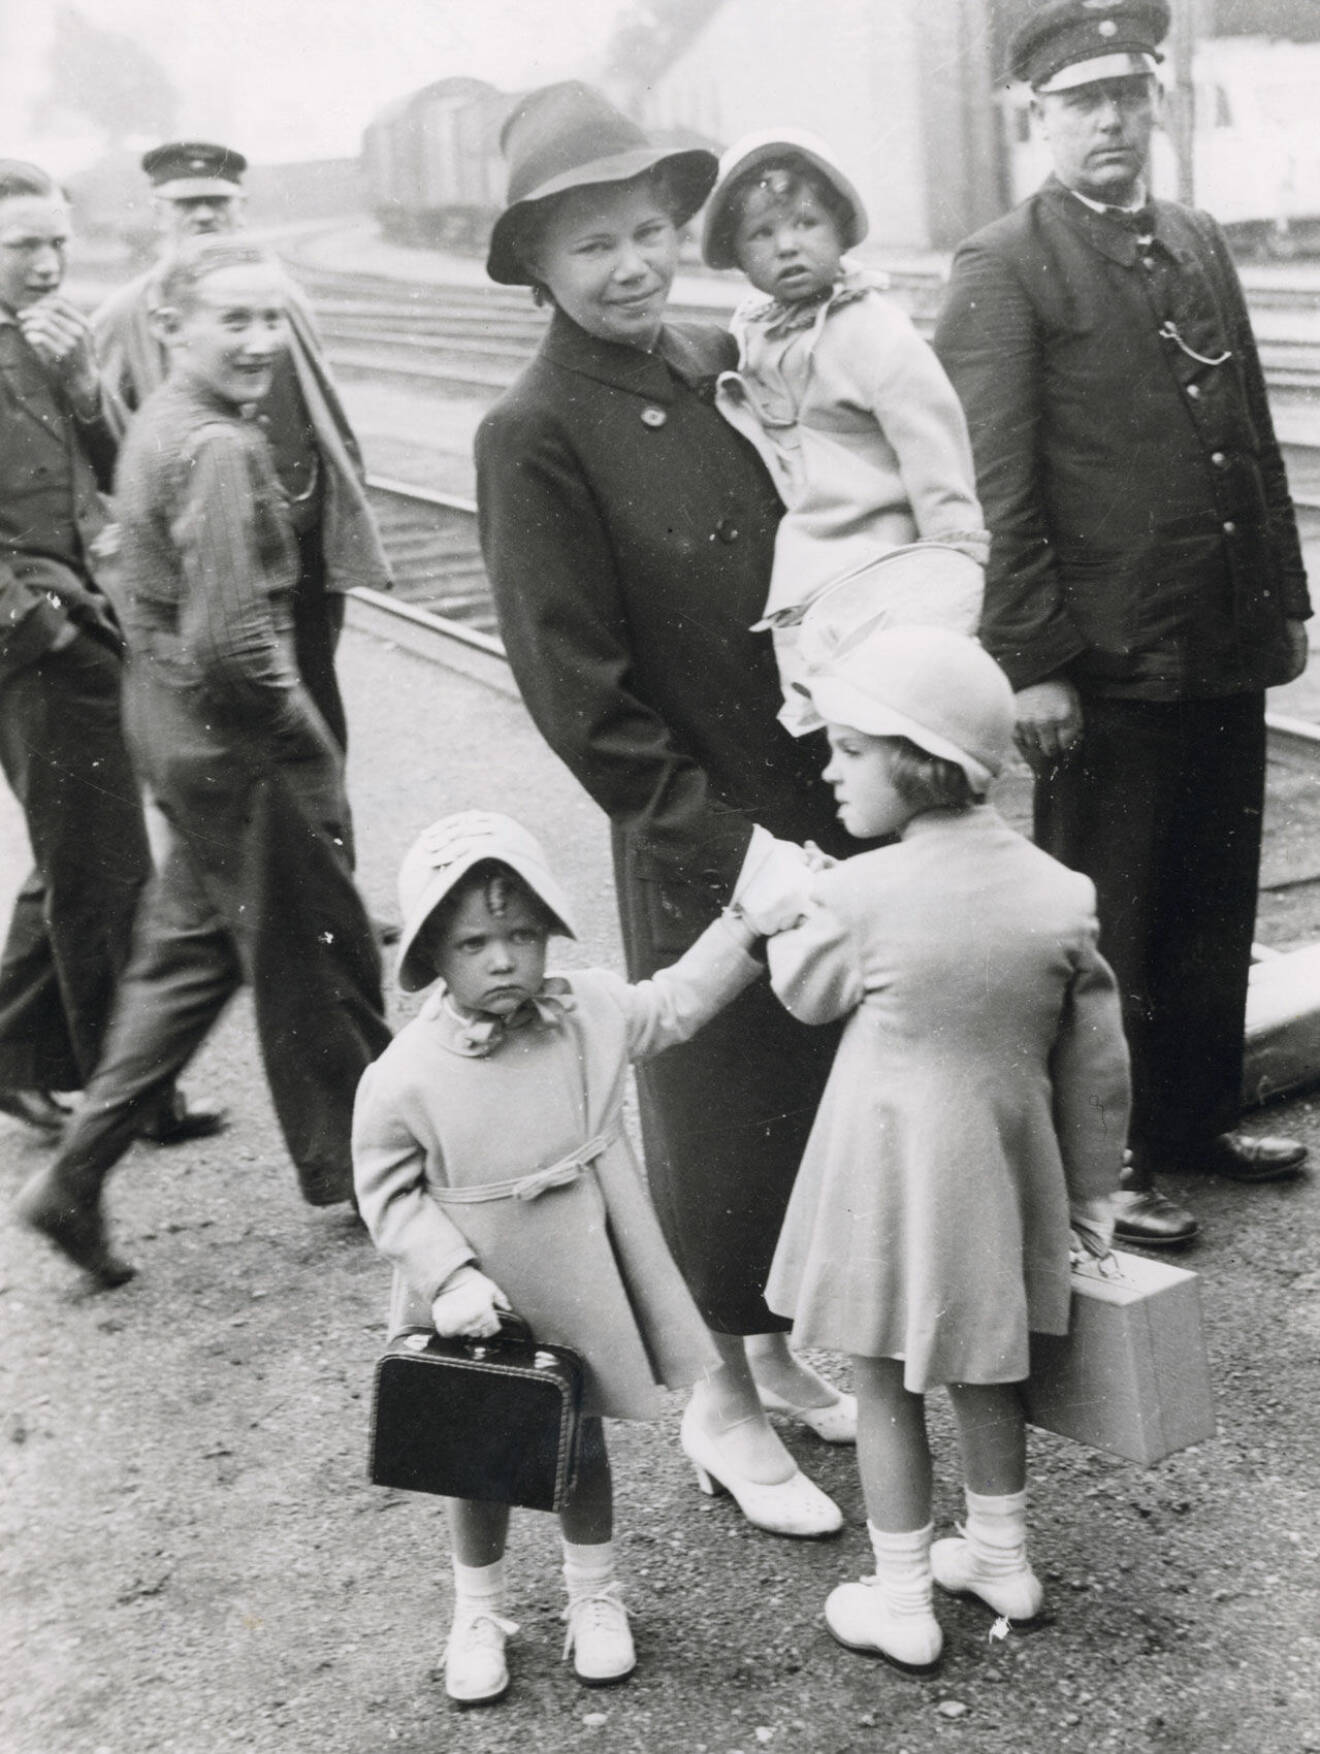 Hagasessorna med barnjungfrun Ingrid " Nenne", Björnberg i Helsingborg, 1940.